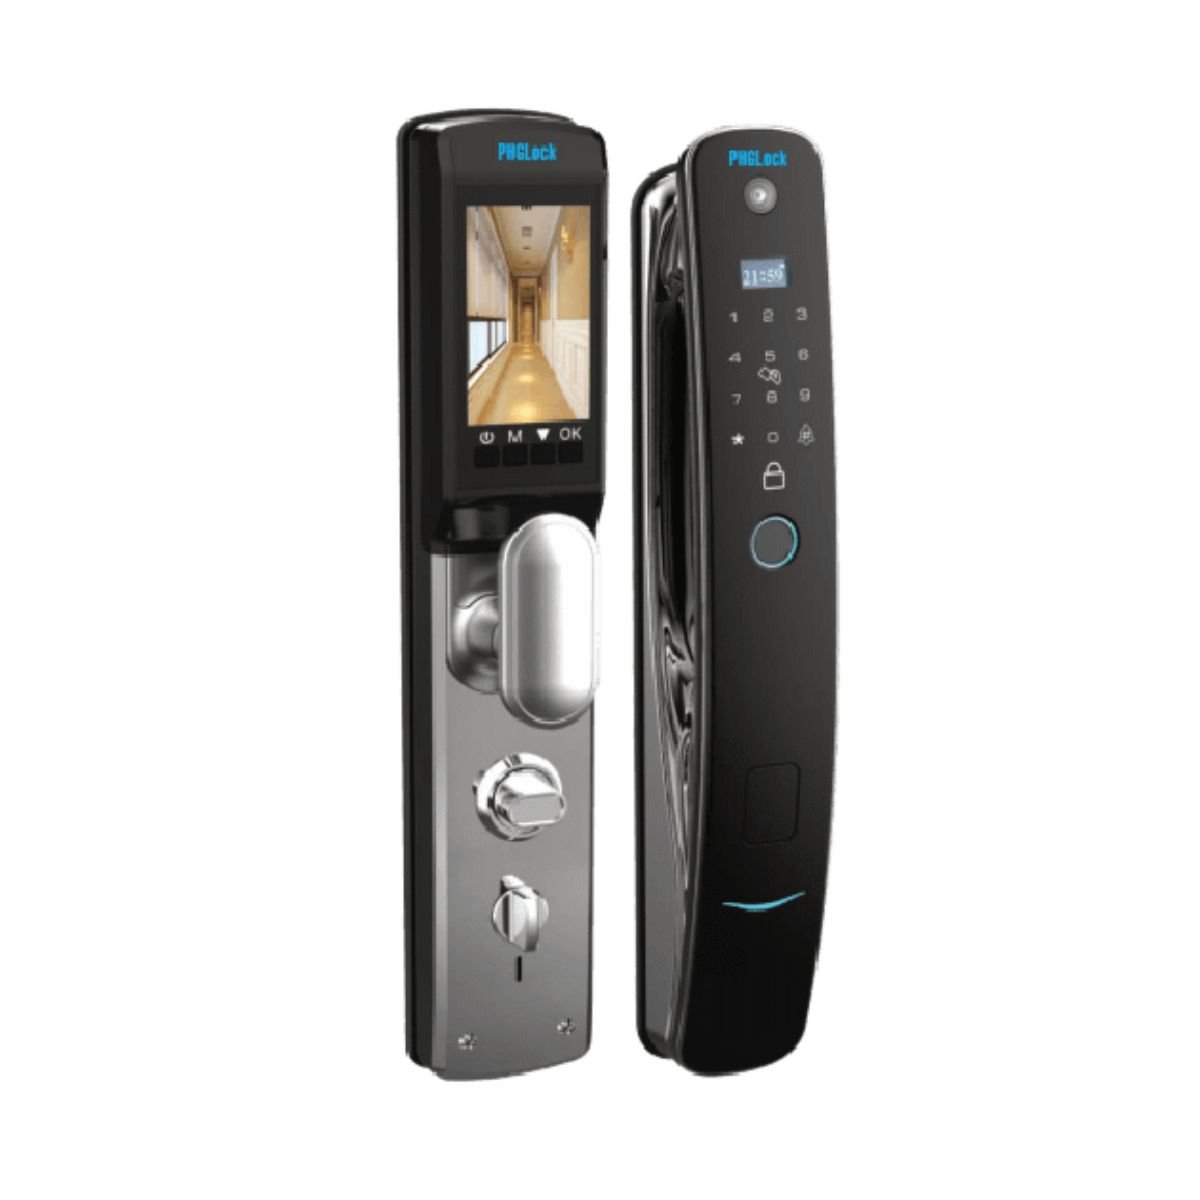 Khóa cửa gỗ thông minh PHGLock FP6080 cho chung cư, căn hộ, mở khóa bằng app, vân tay, thẻ và  mật mã và chìa khóa cơ